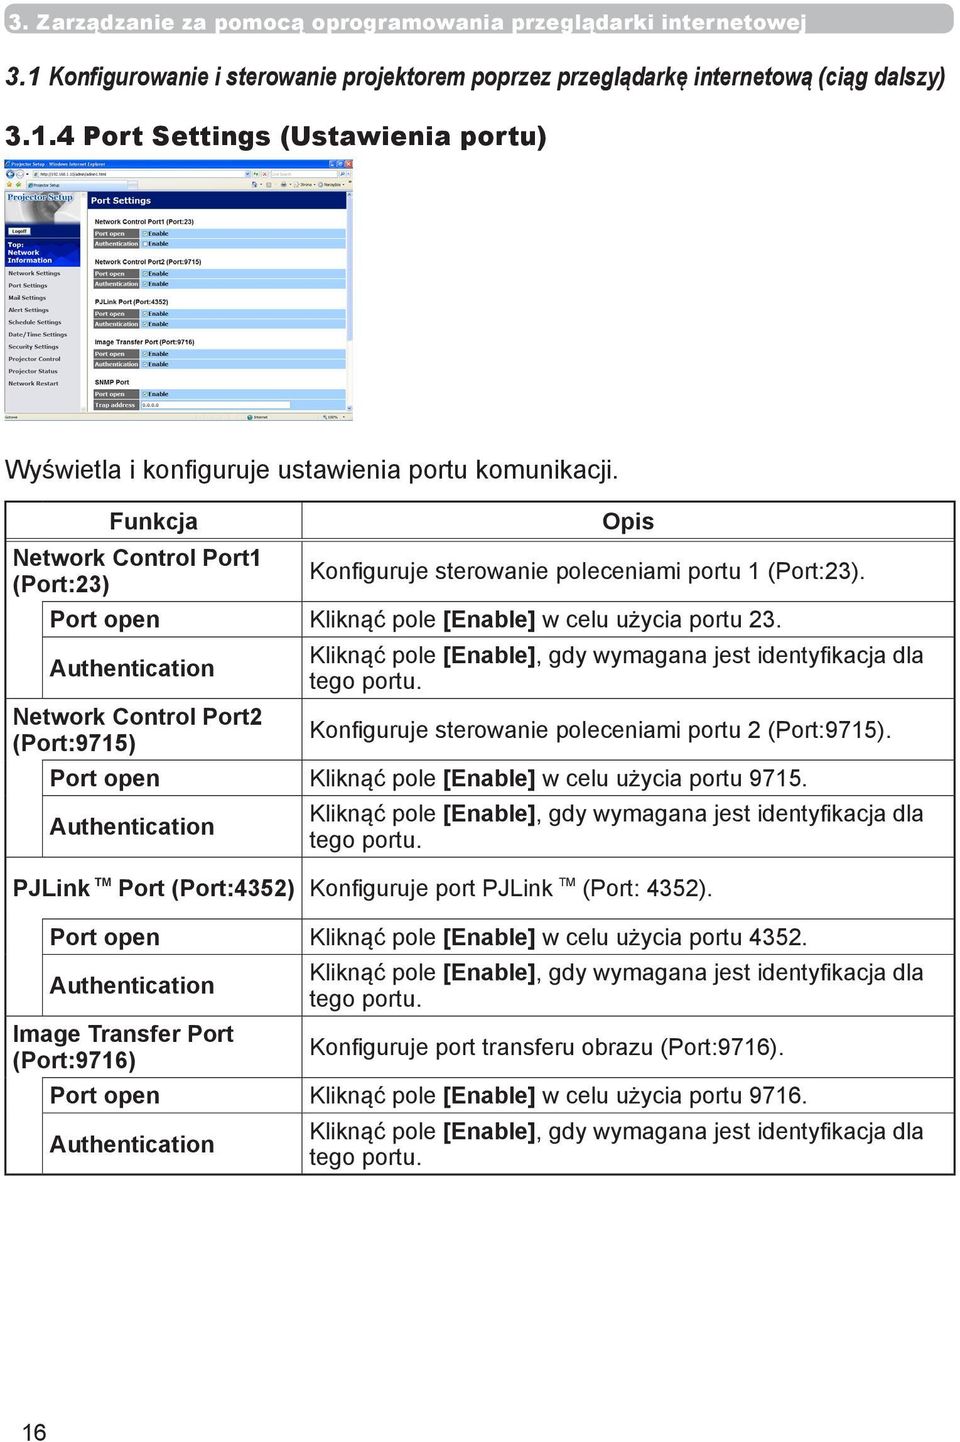 Authentication Network Control Port2 (Port:9715) Kliknąć pole [Enable], gdy wymagana jest identyfikacja dla tego portu. Konfiguruje sterowanie poleceniami portu 2 (Port:9715).